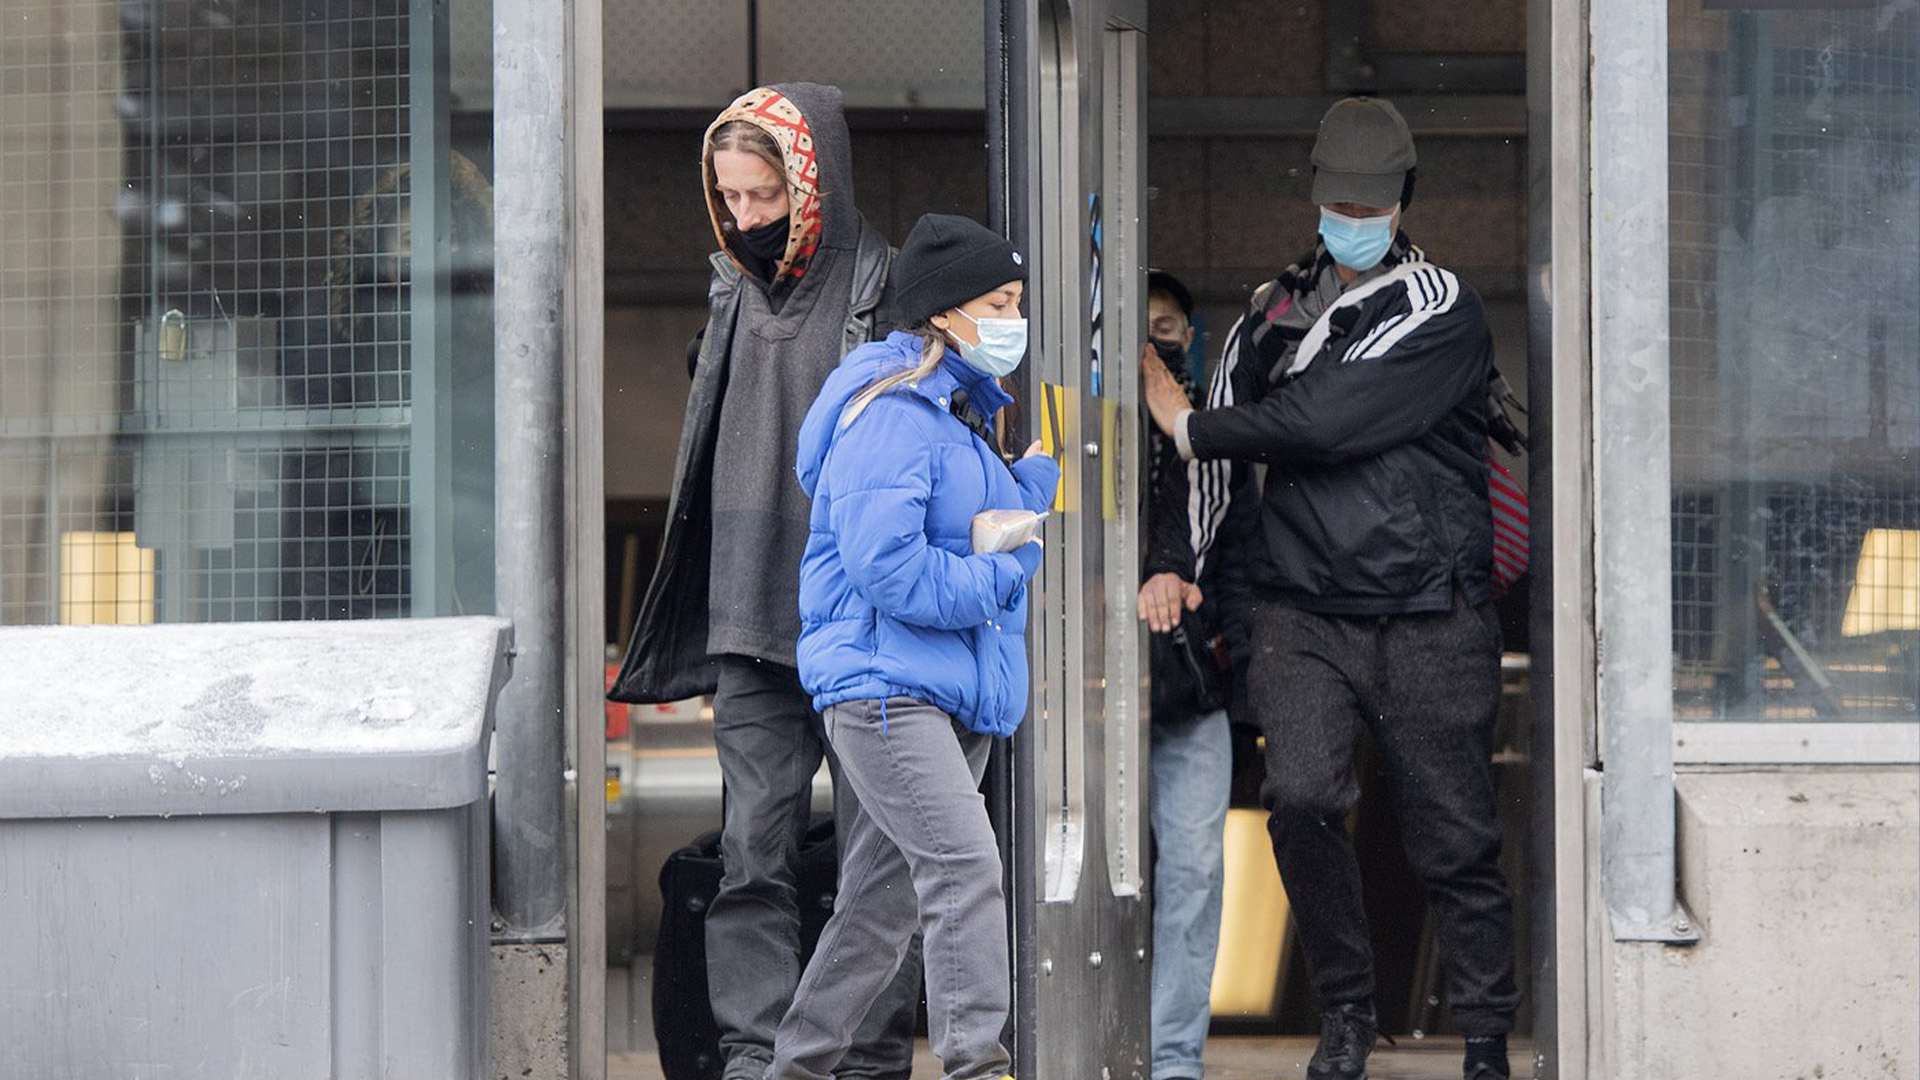 Les gens portent des masques faciaux en quittant une station de métro à Montréal, le samedi 12 mars 2022, alors que la pandémie de COVID-19 se poursuit au Canada.